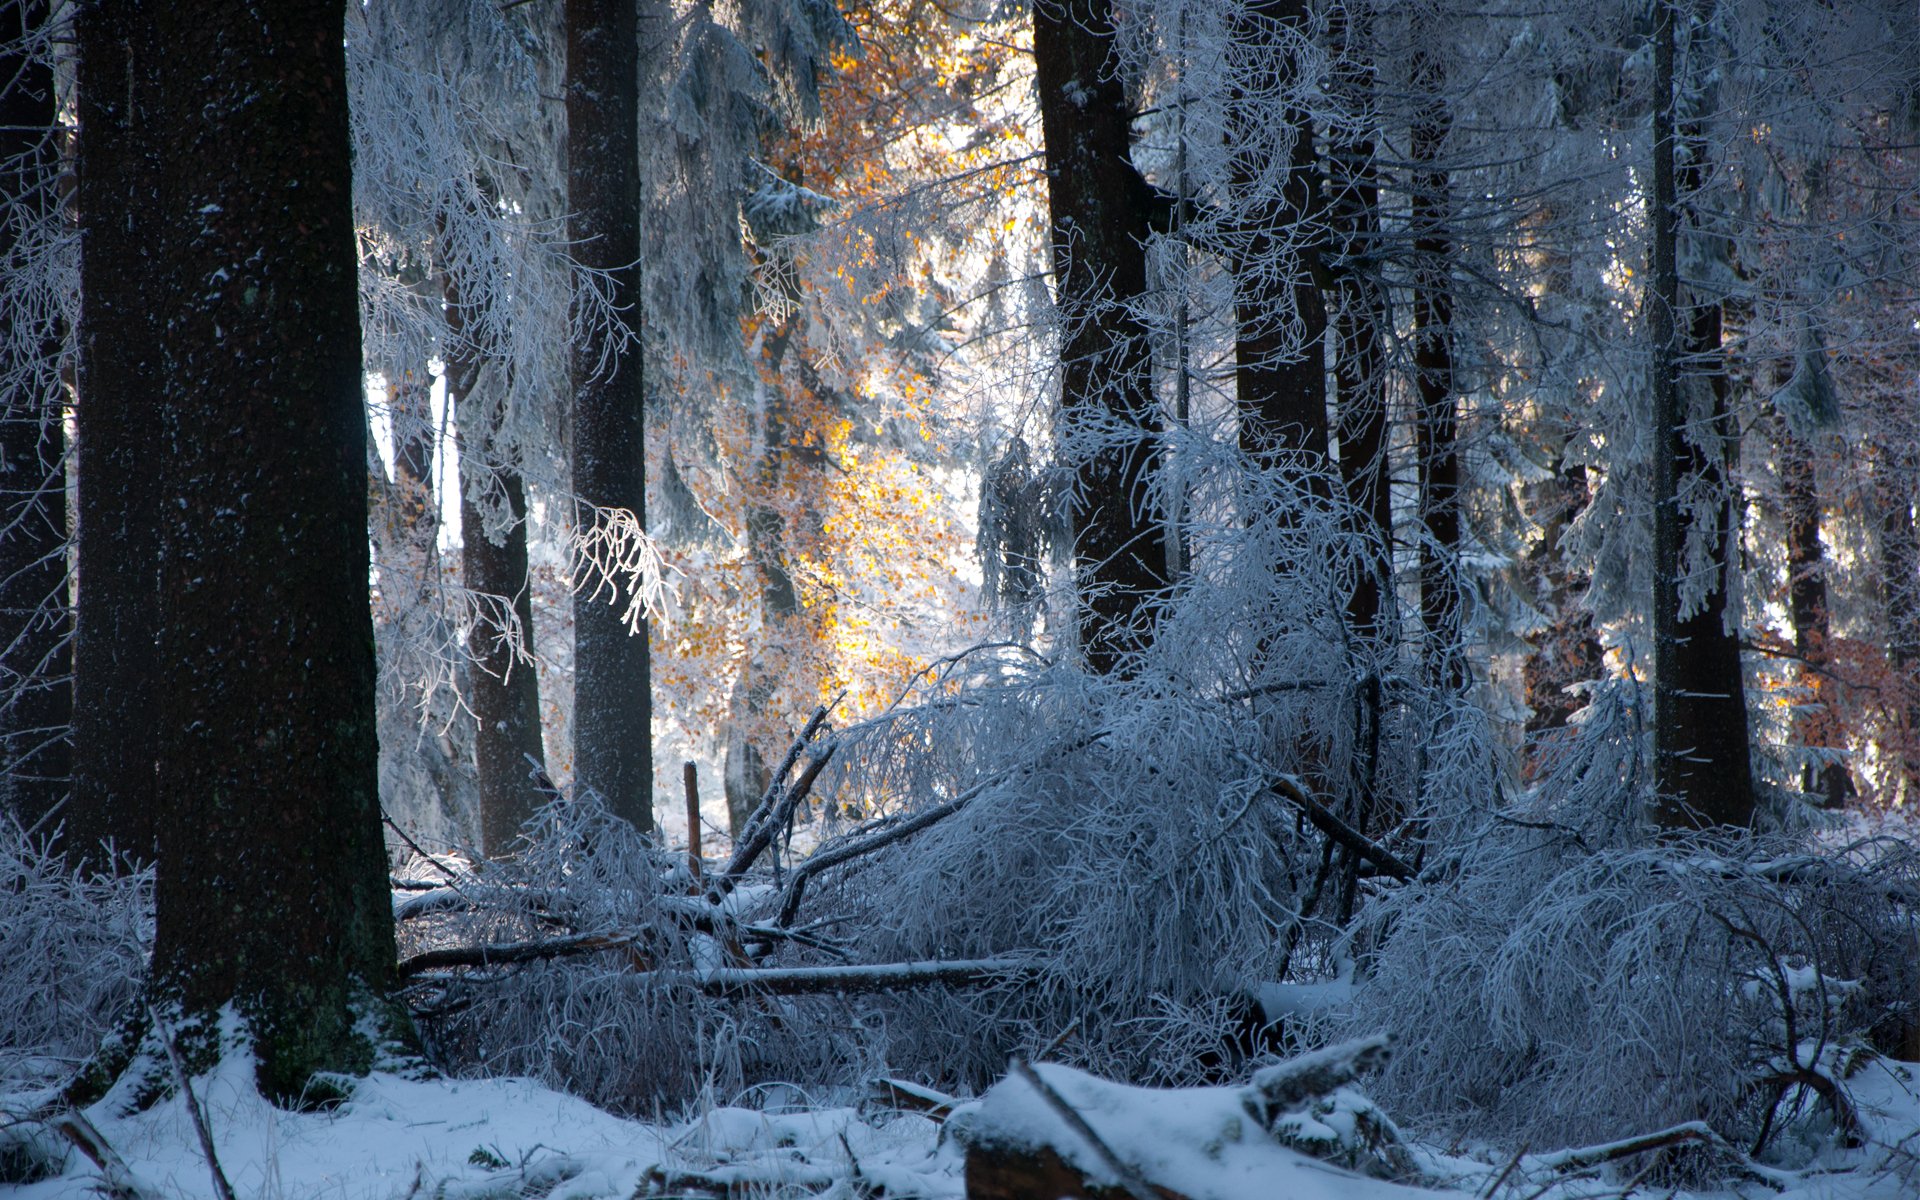 Фф и в морозном лесу навеки останусь. Зимний лес. Заснеженный лес. Зимой в лесу. Лес в снегу.